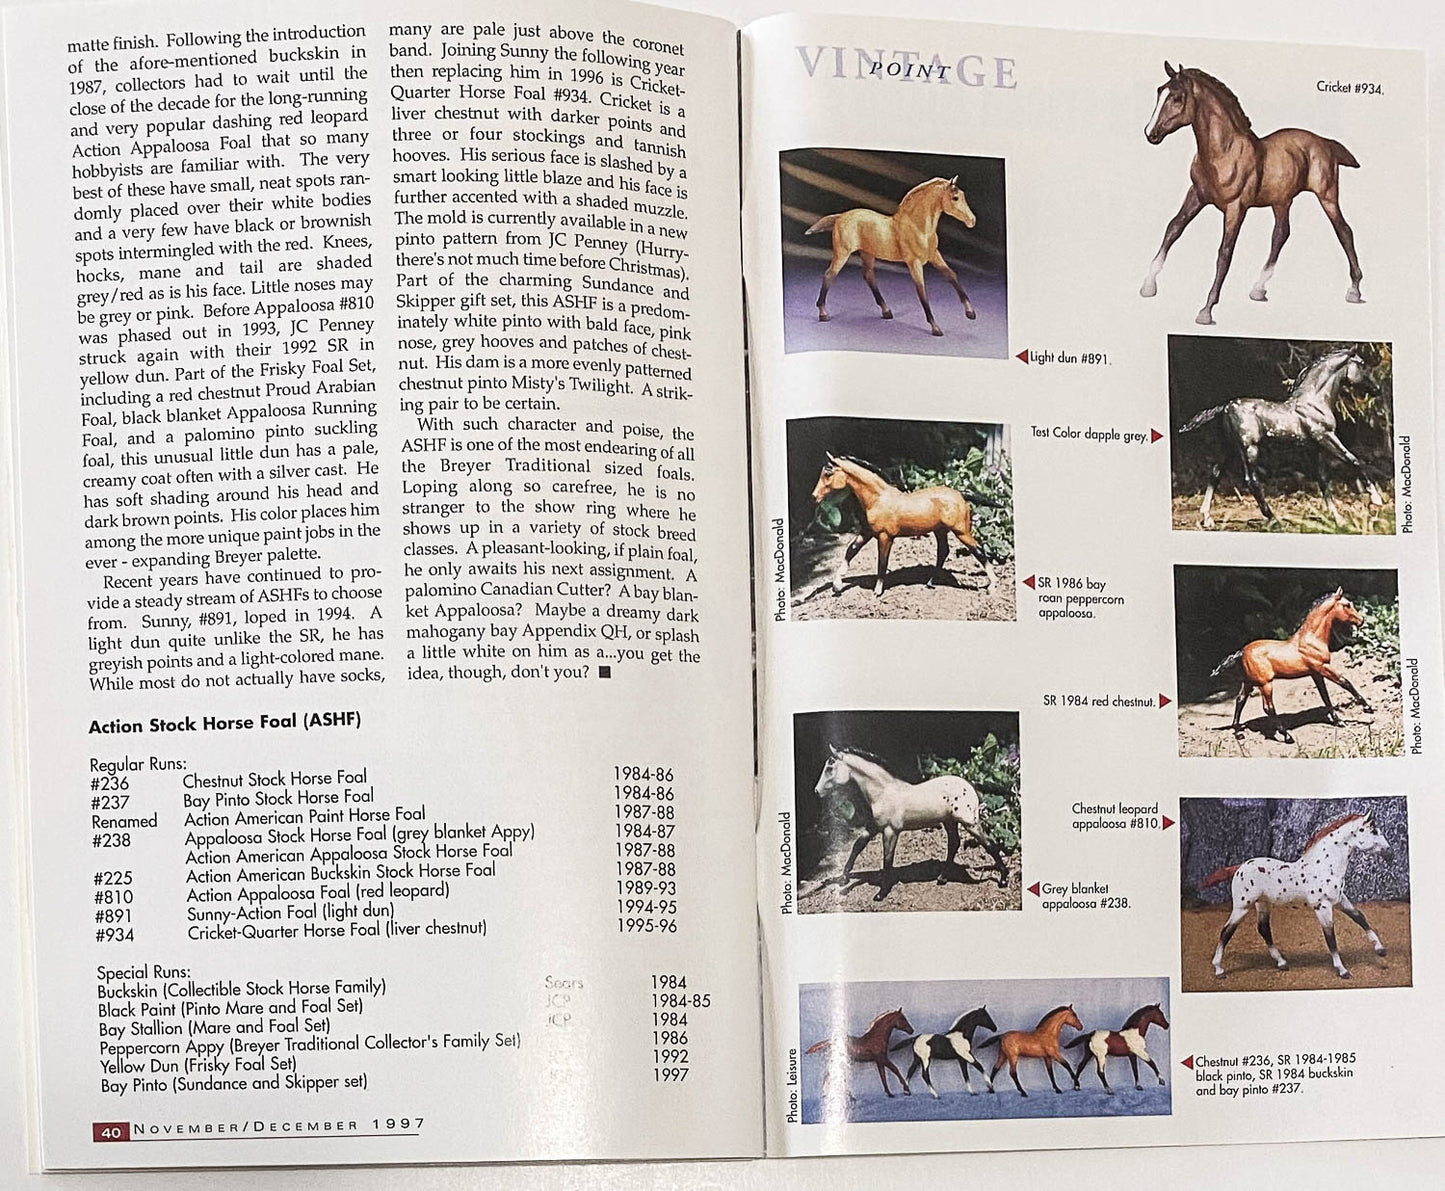 Just About Horses Magazine Vol. 24, No. 6, 1997 Nov/Dec